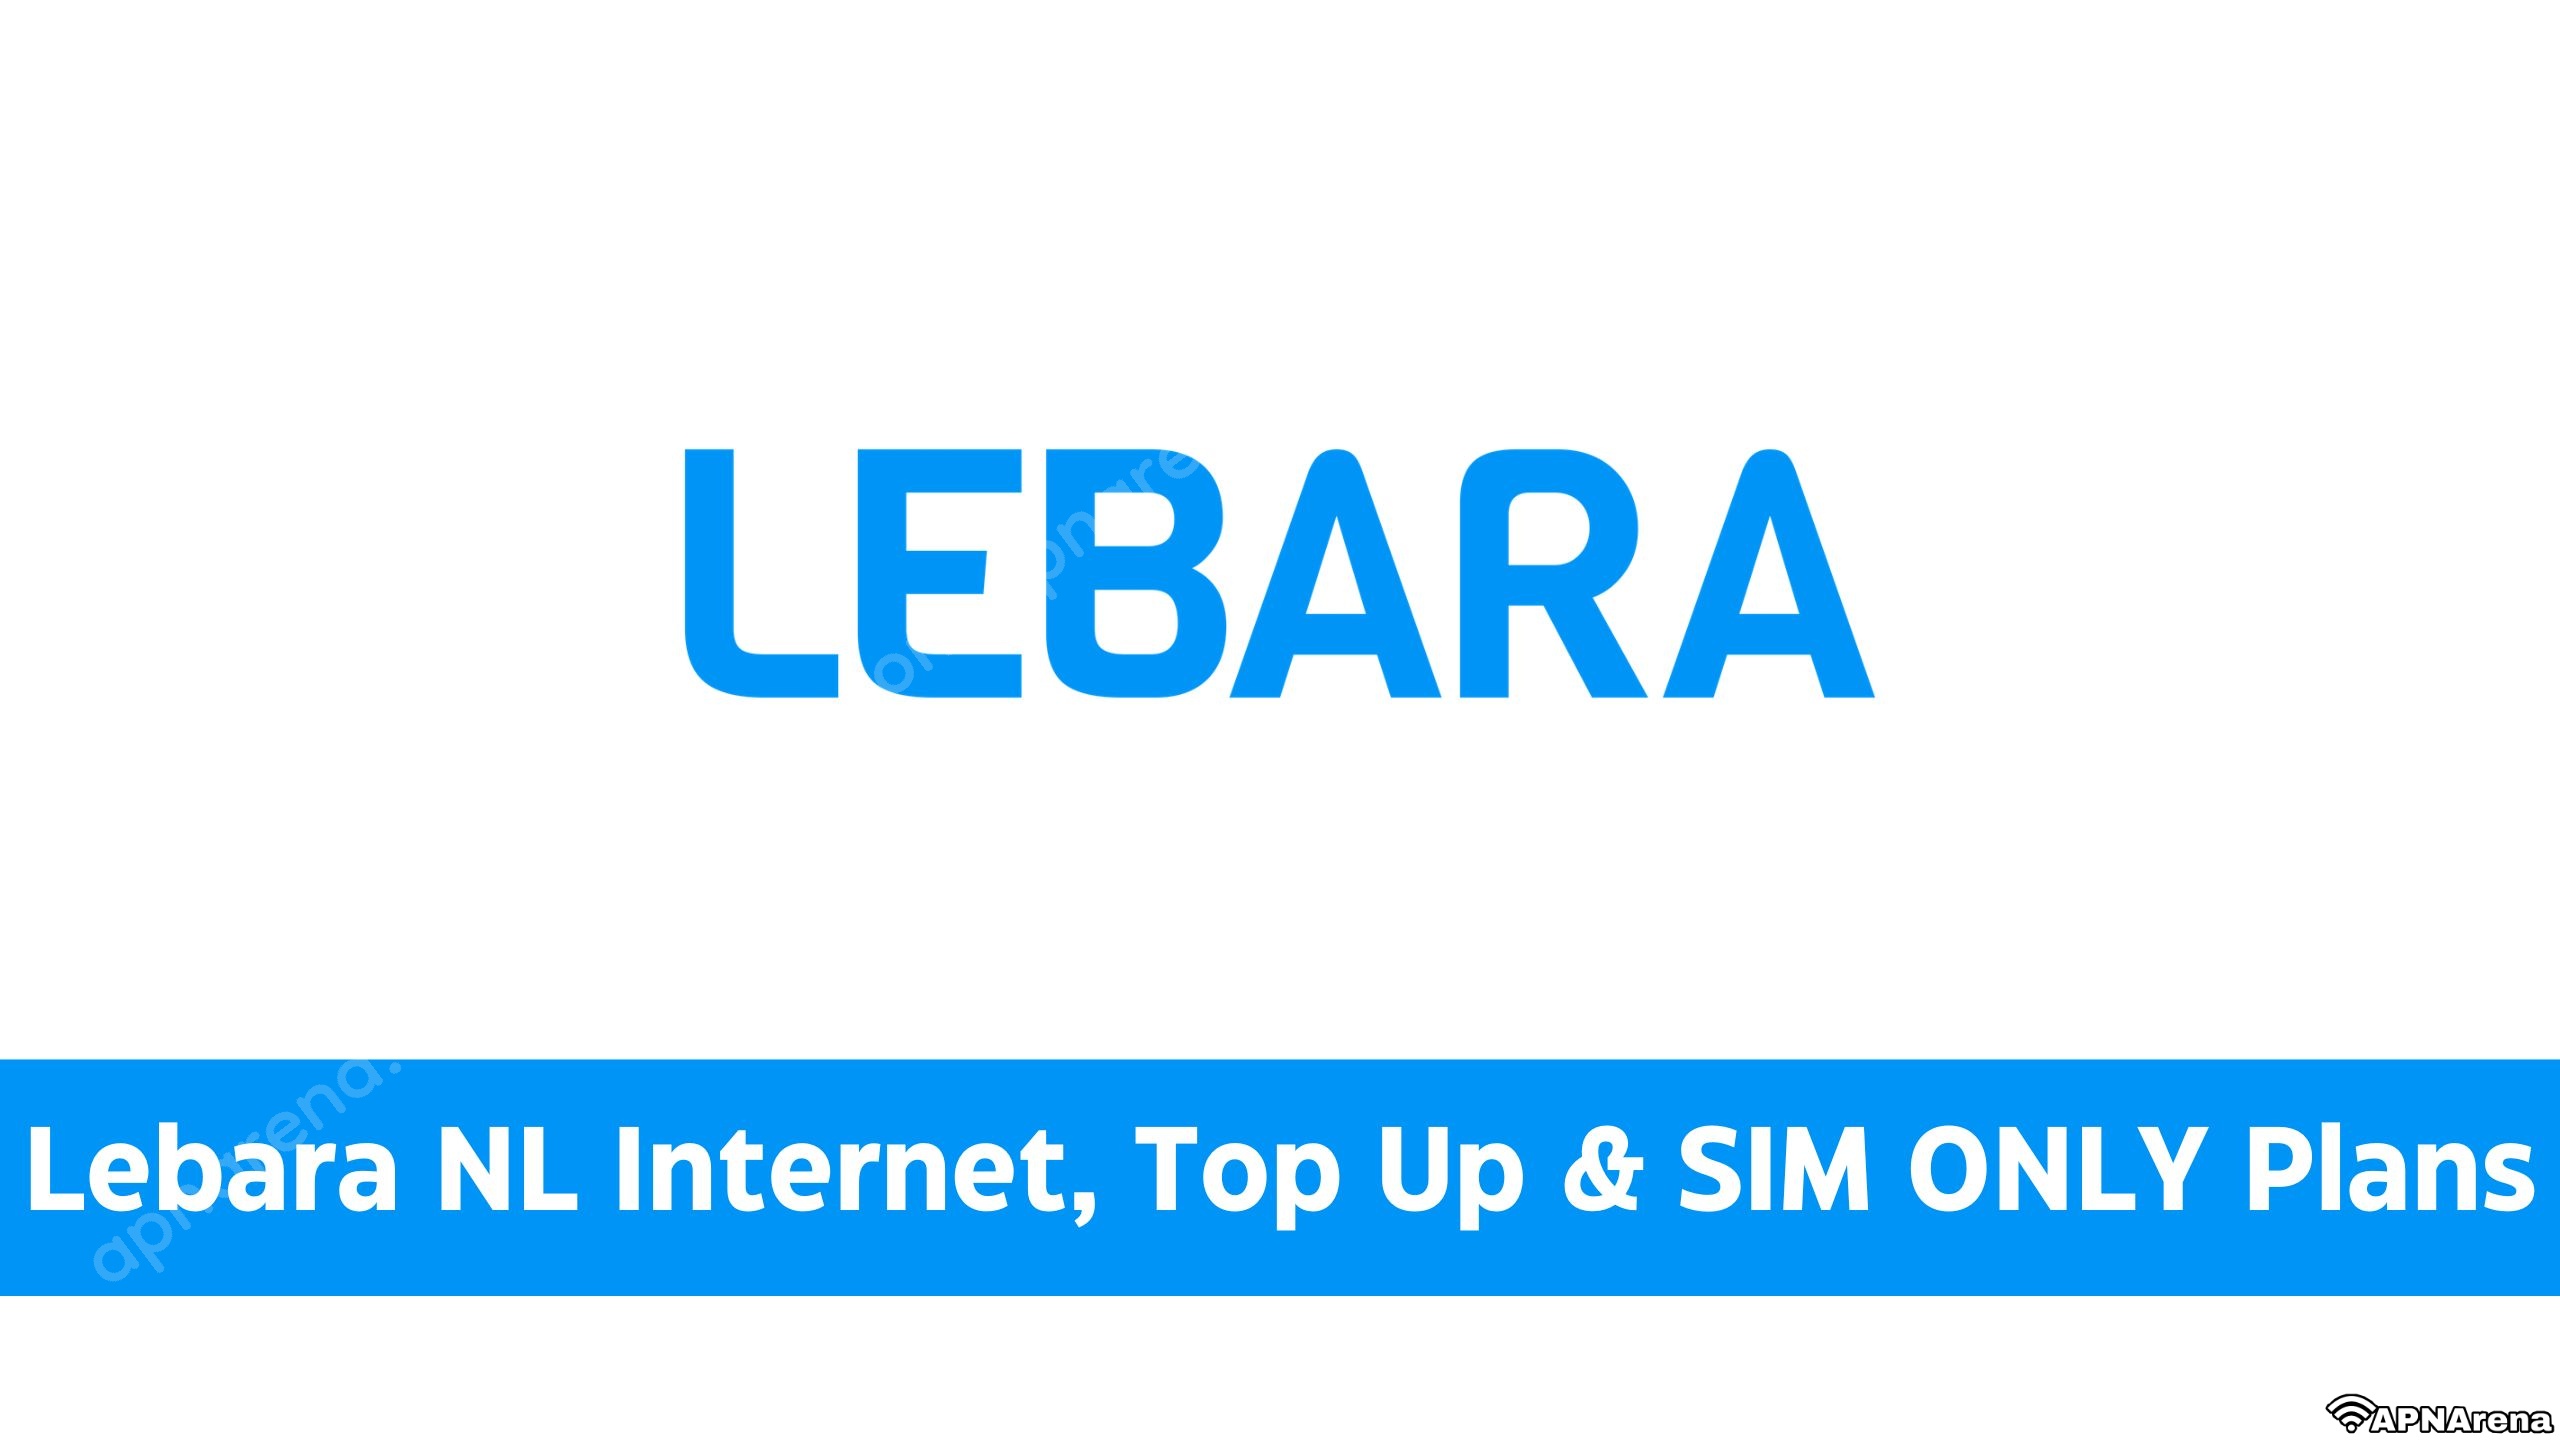 Lebara NL Internet, & ONLY SIM Bundles Data | Up & Beltegoed, Other Opwaarderen, Top Plans